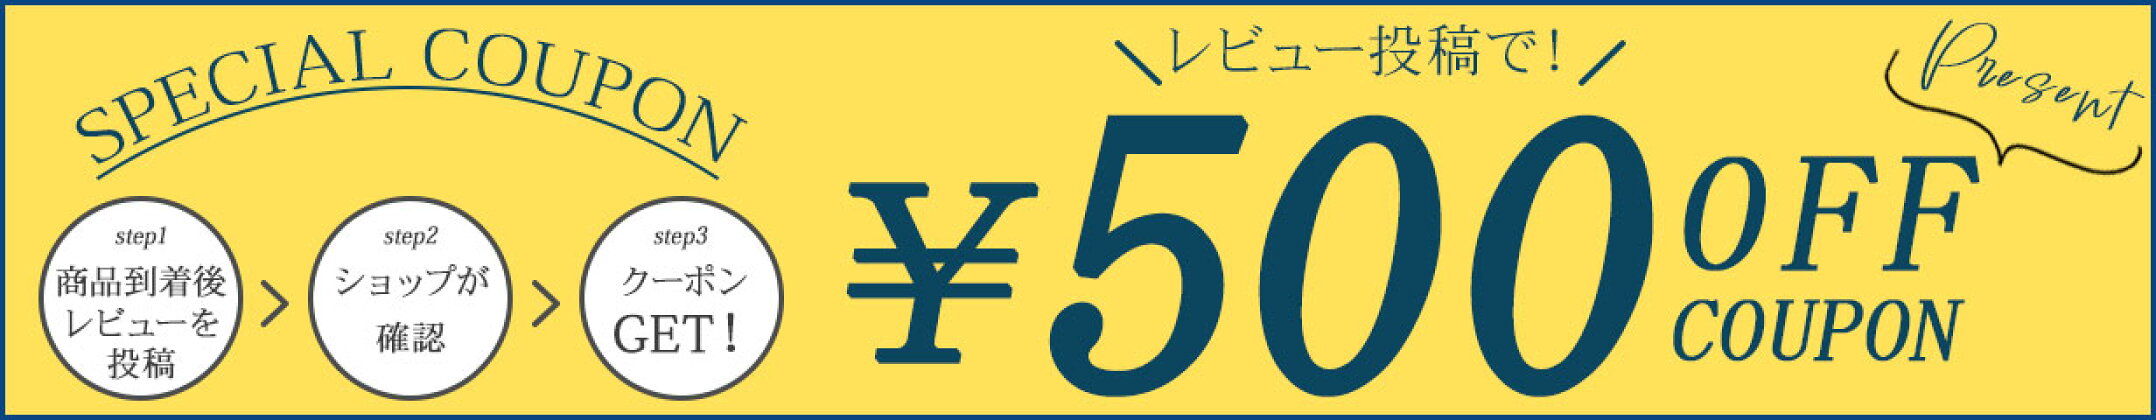 【レビュー投稿キャンペーン】レビュー投稿で500円OFFクーポンプレゼント